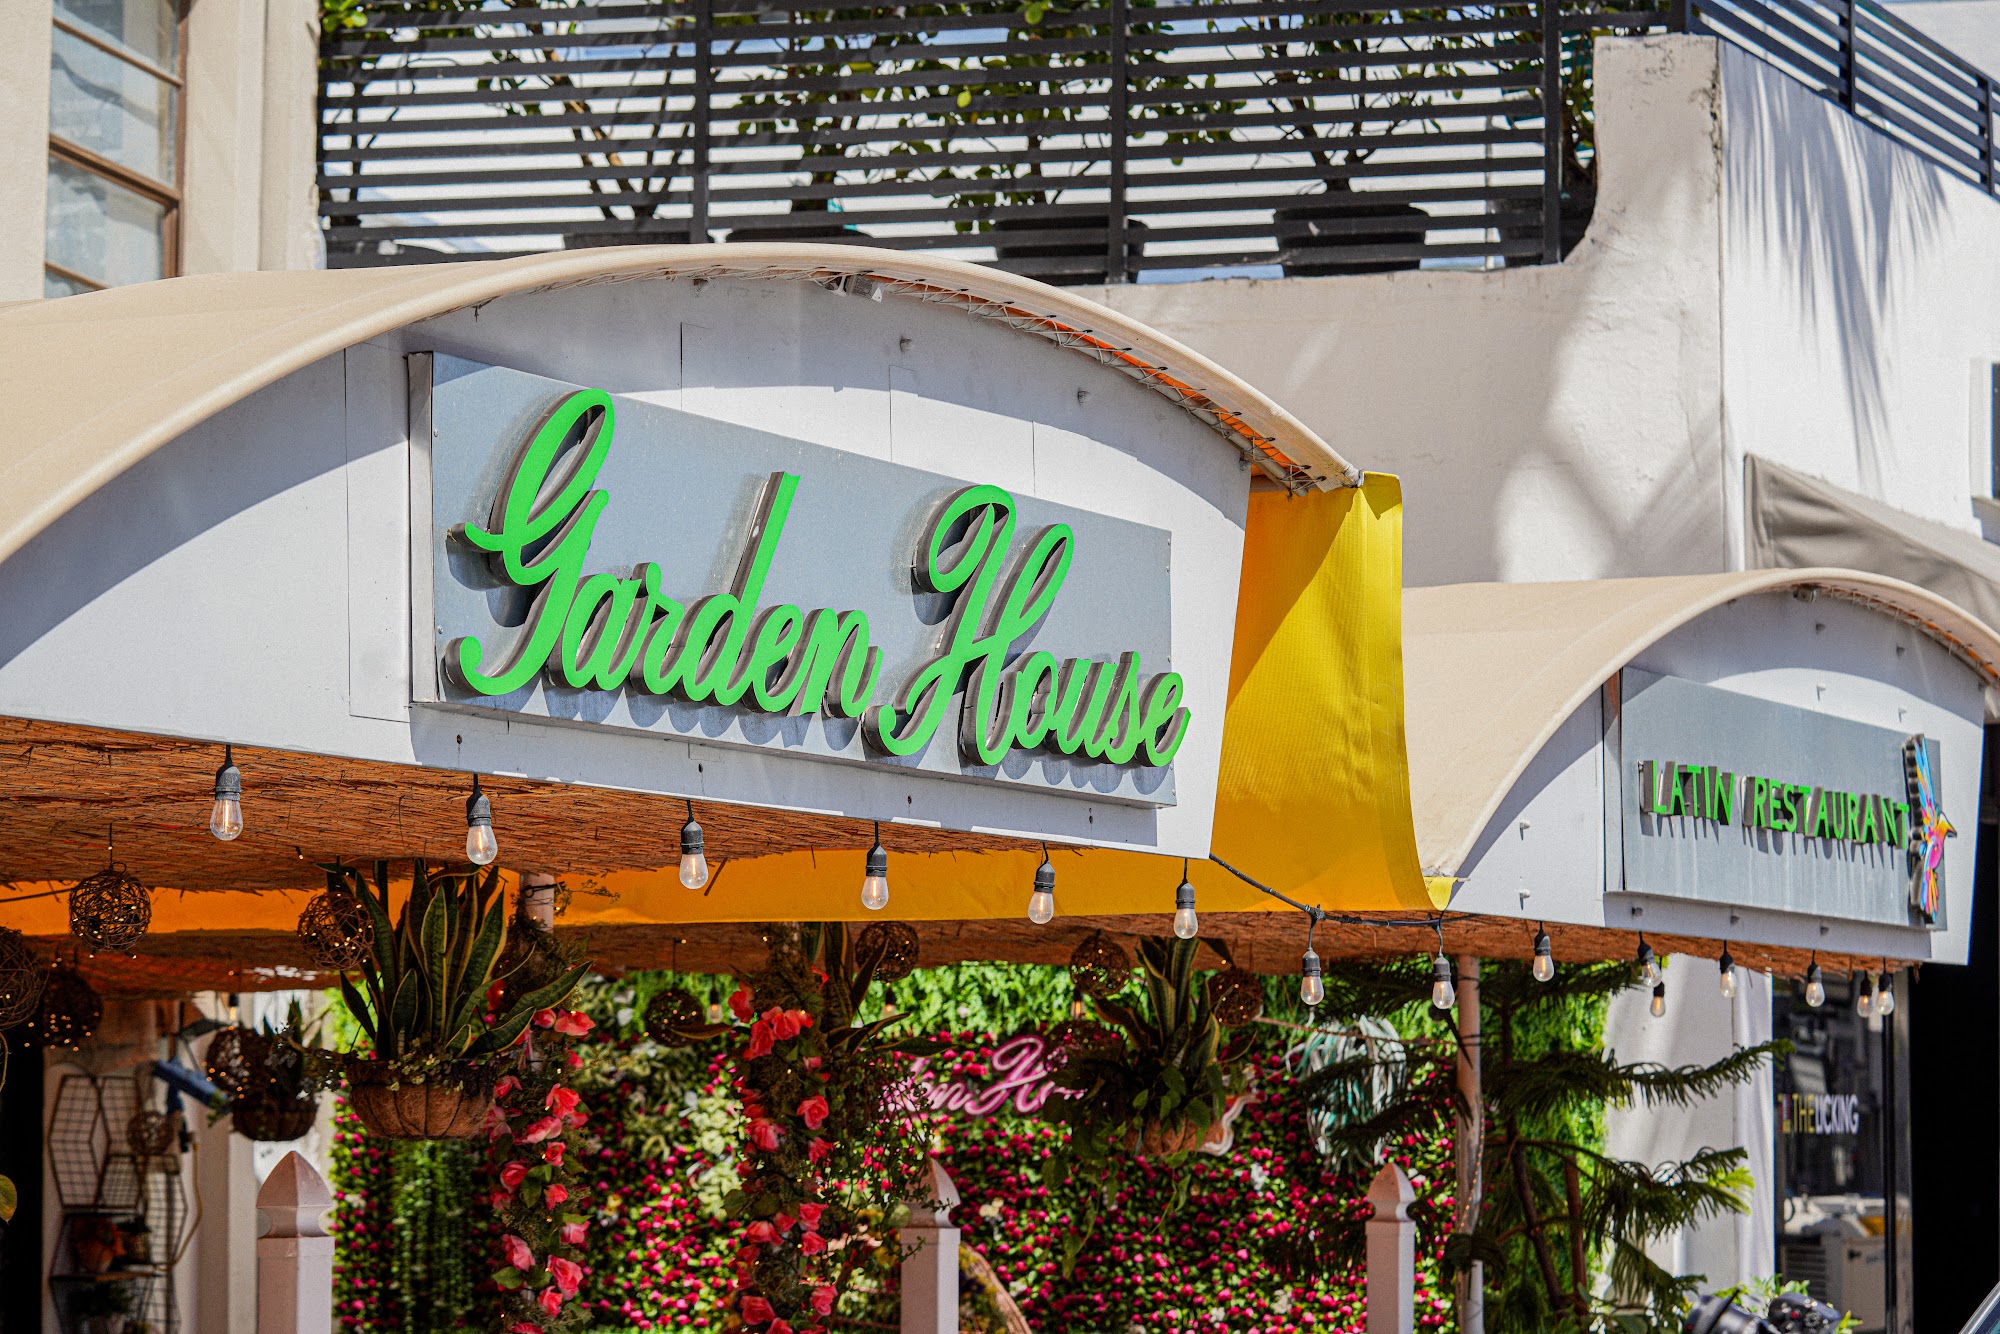 Garden House Latin Restaurant in Miami Beach